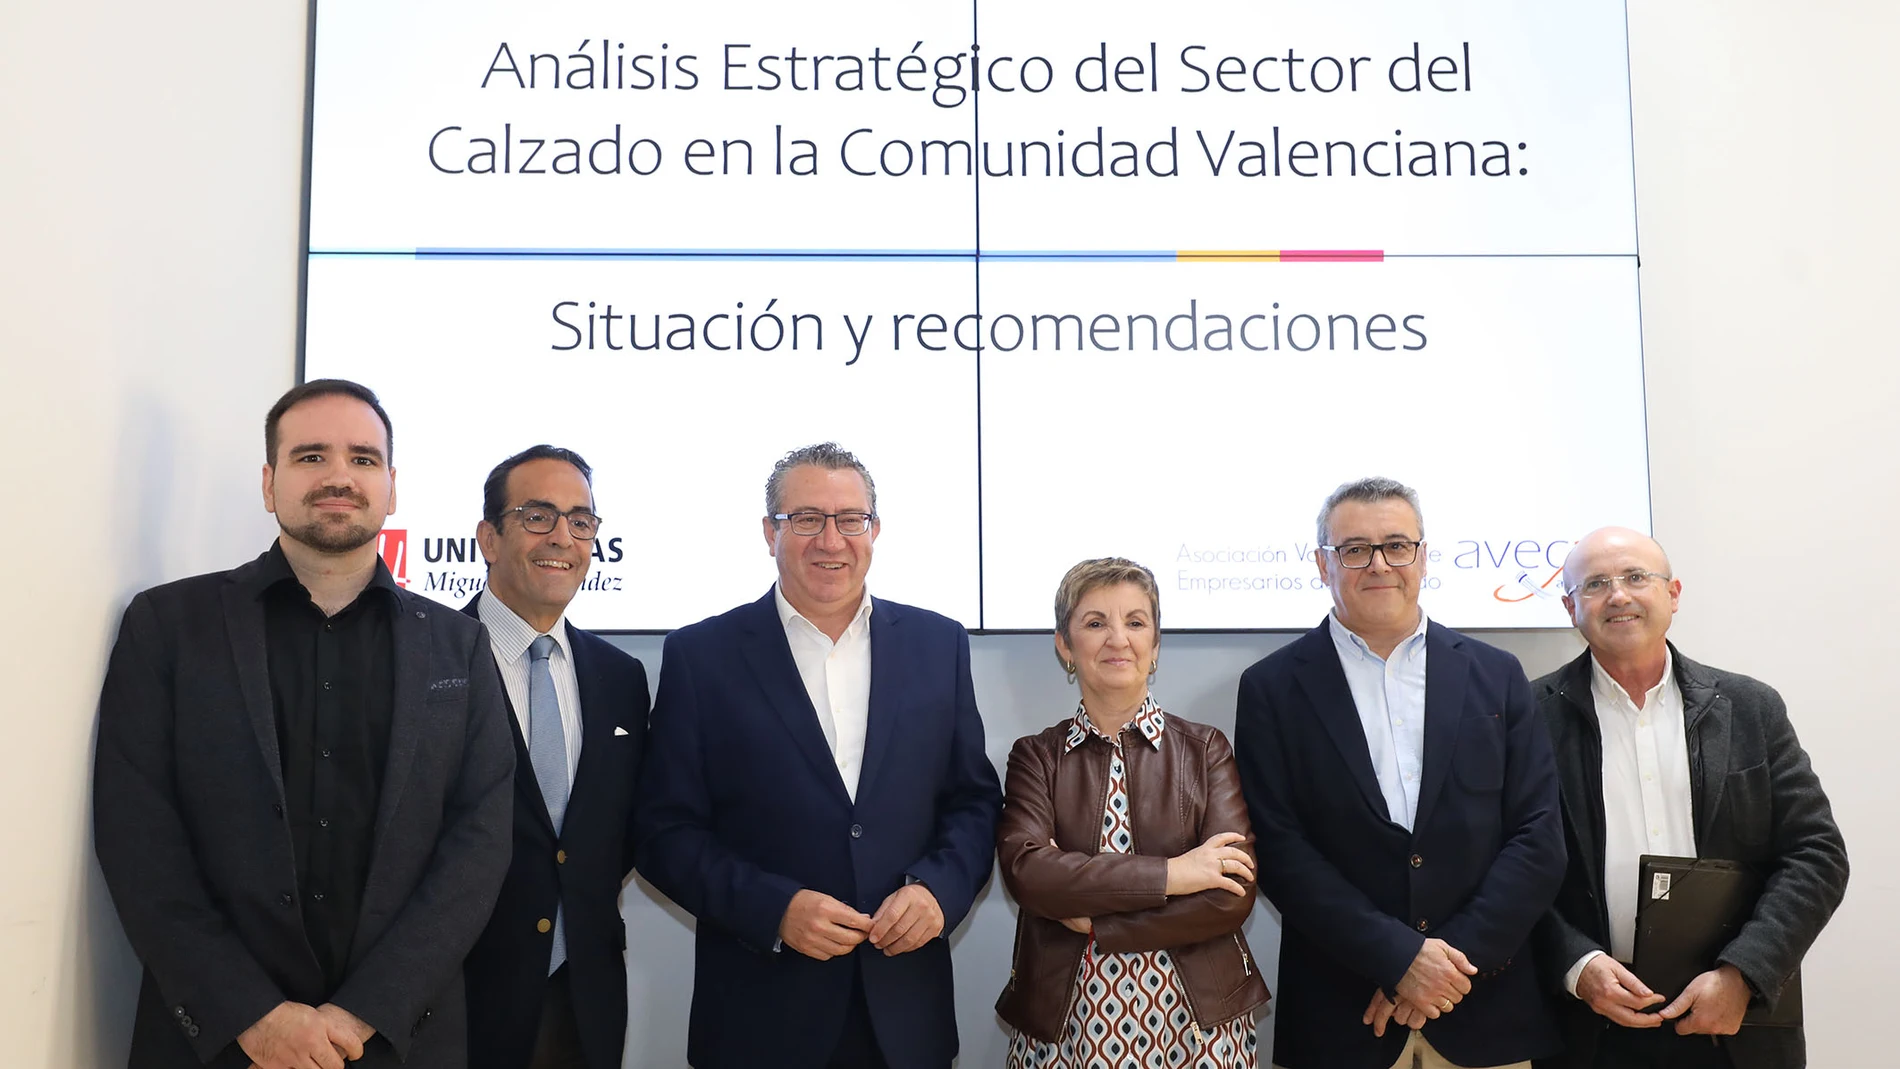 Hoy se ha presentado en la Diputación de Alicante un informe que traza un diagnóstico sobre el sector del calzado en la Comunitat Valenciana.